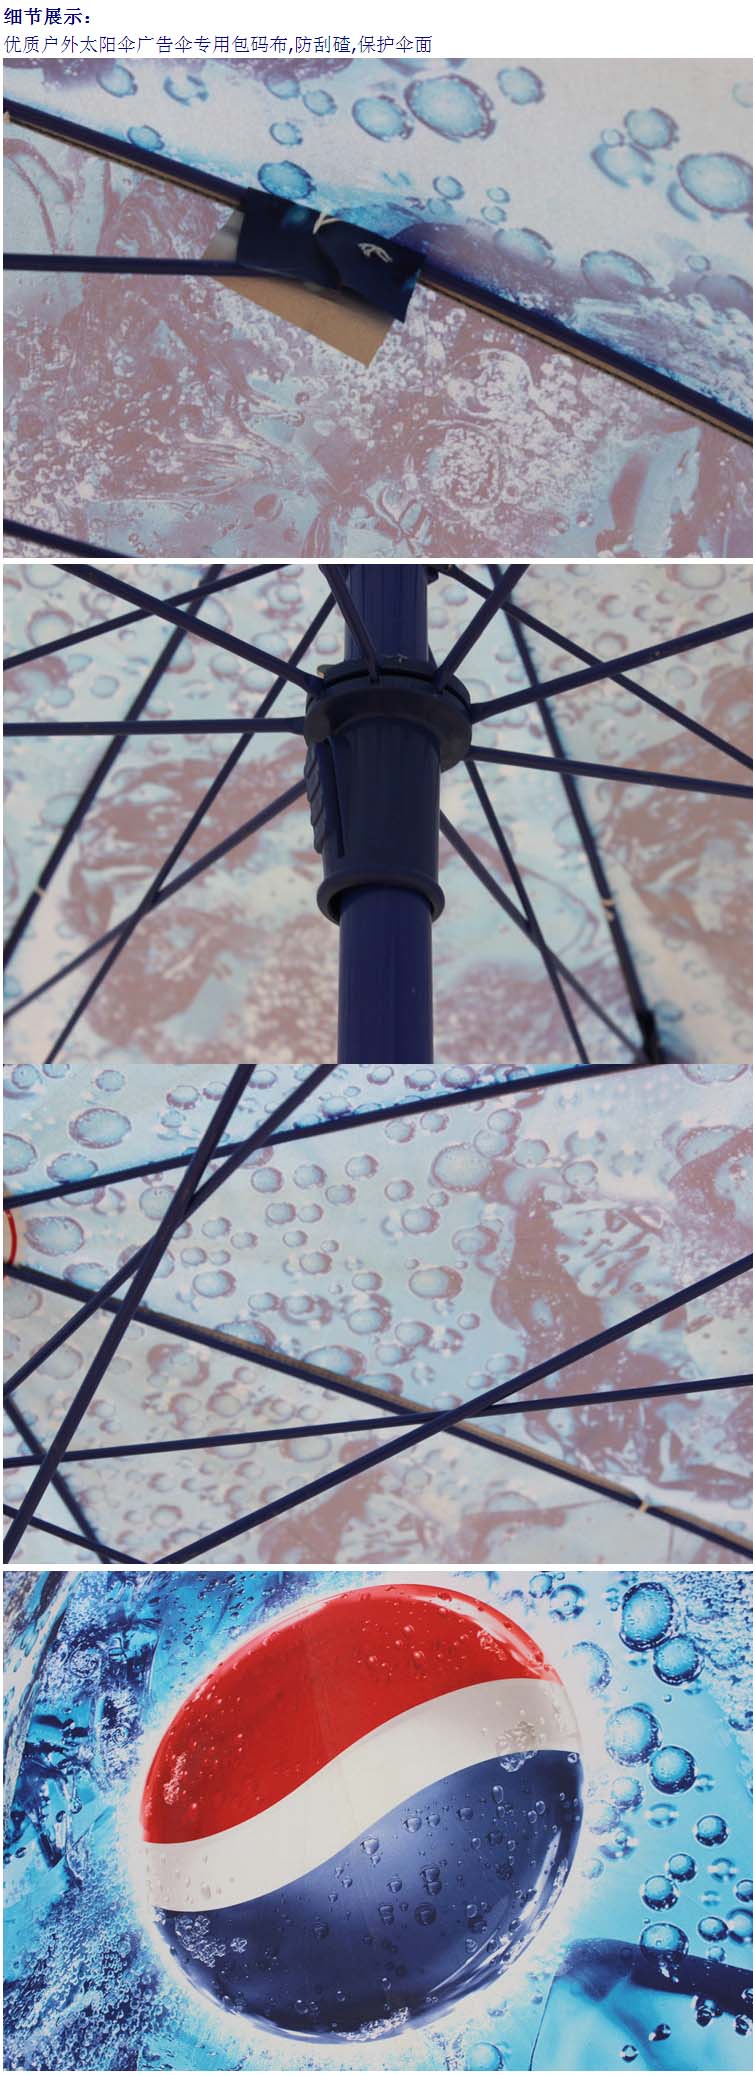 户外太阳伞带折叠桌椅移动户外伞 活动促销广告伞遮阳伞定制